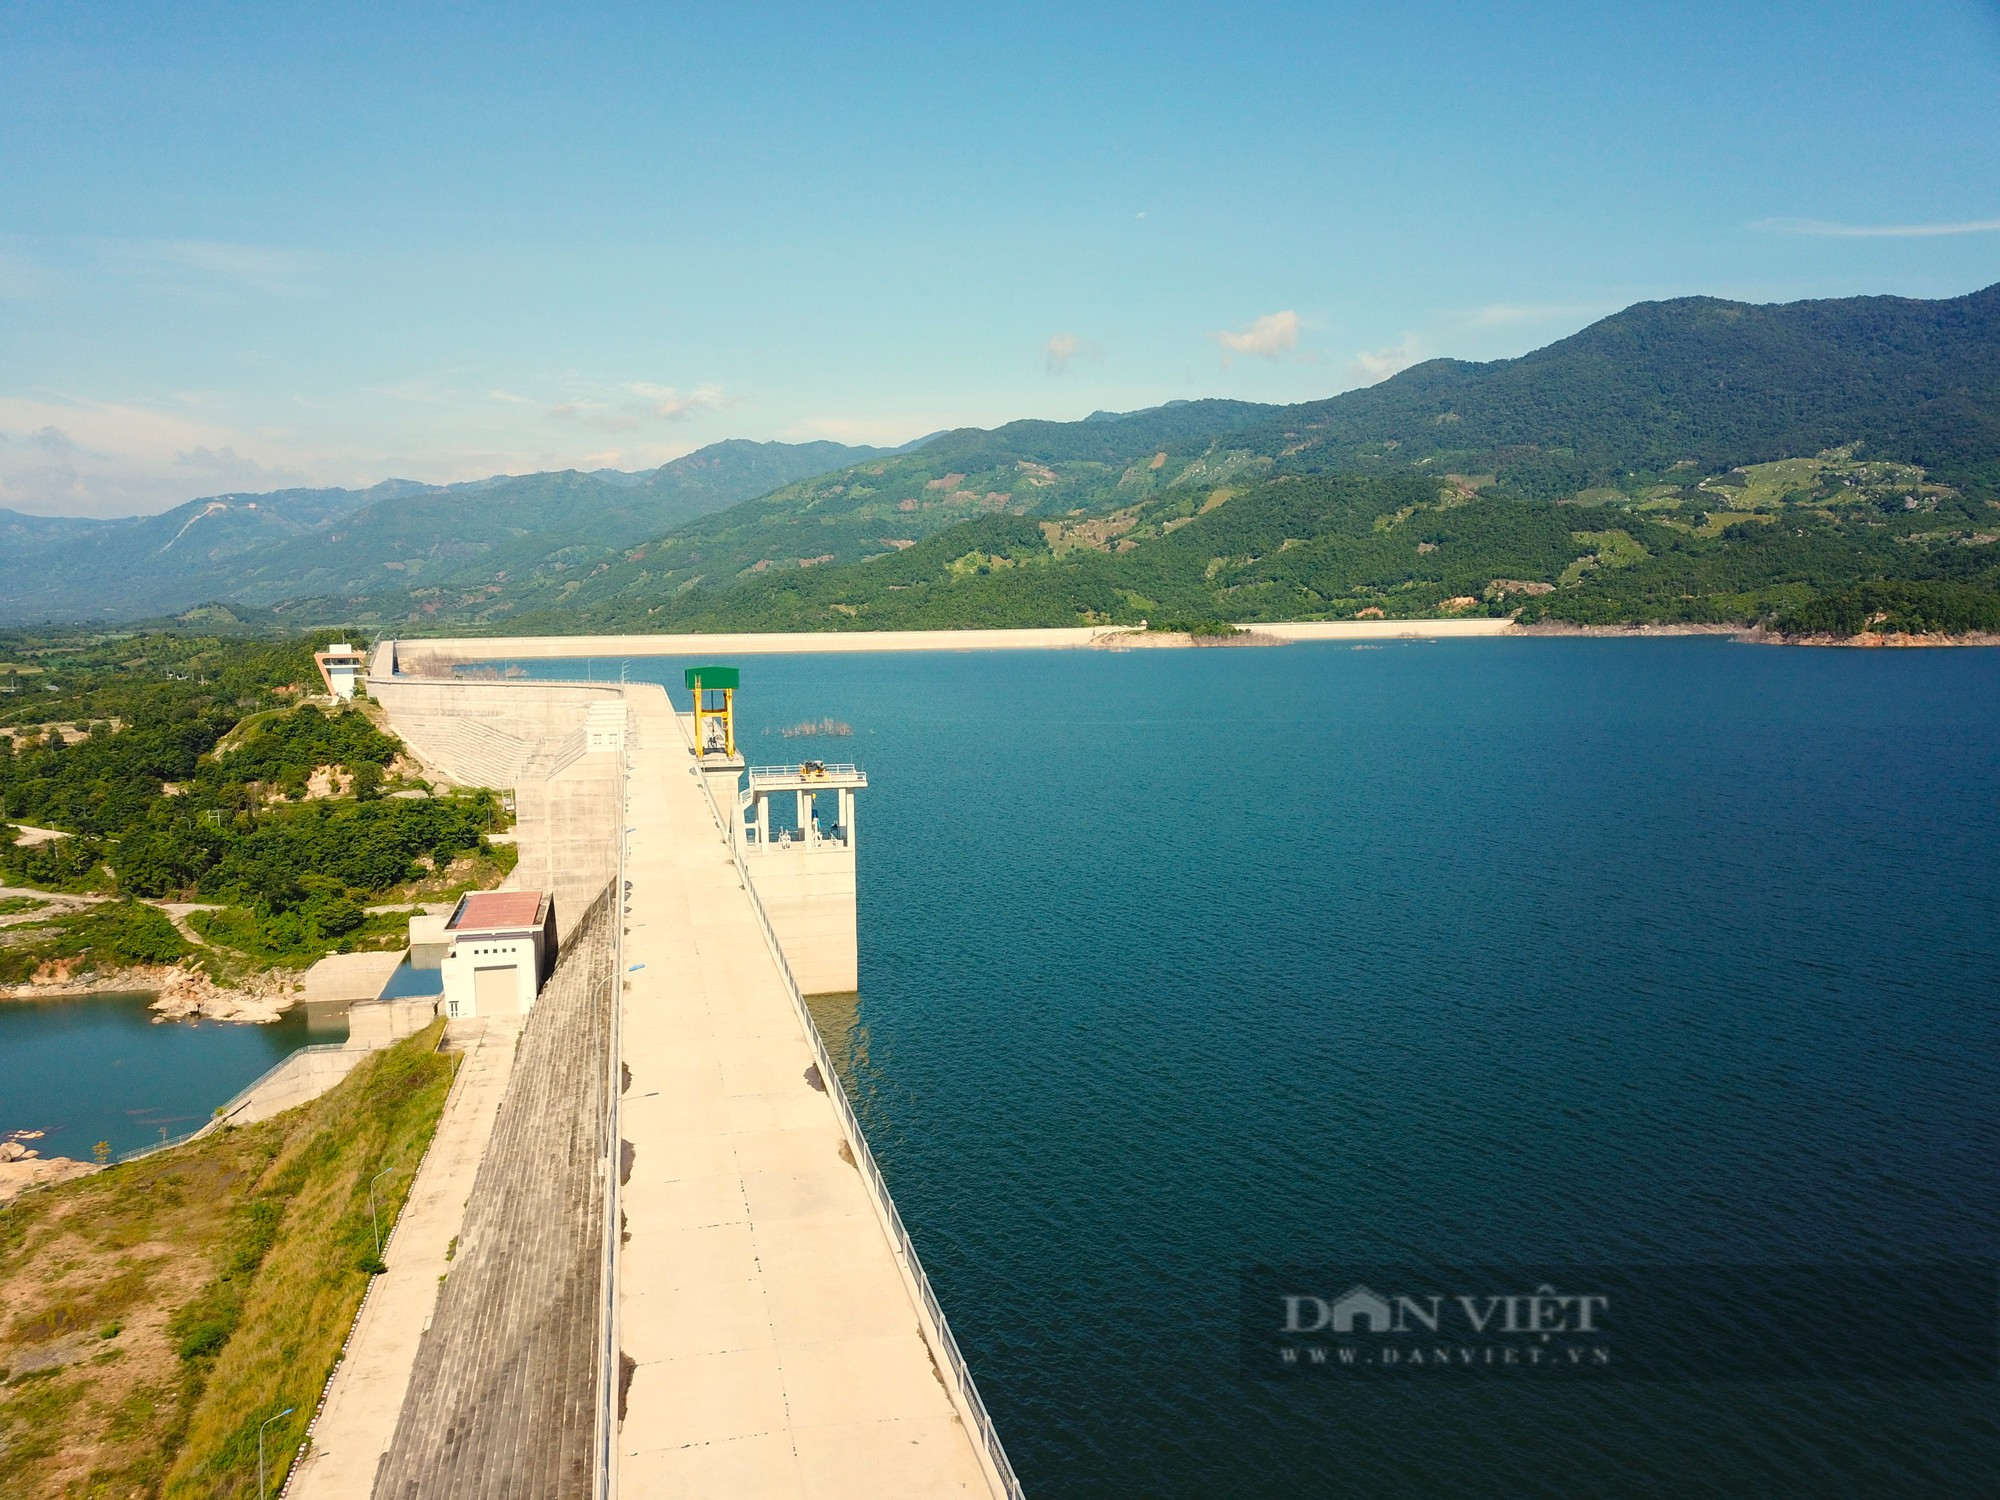 Siêu công trình hồ thủy lợi Sông Cái có đập bê tông dài nhất Việt Nam ở Ninh Thuận - Ảnh 4.